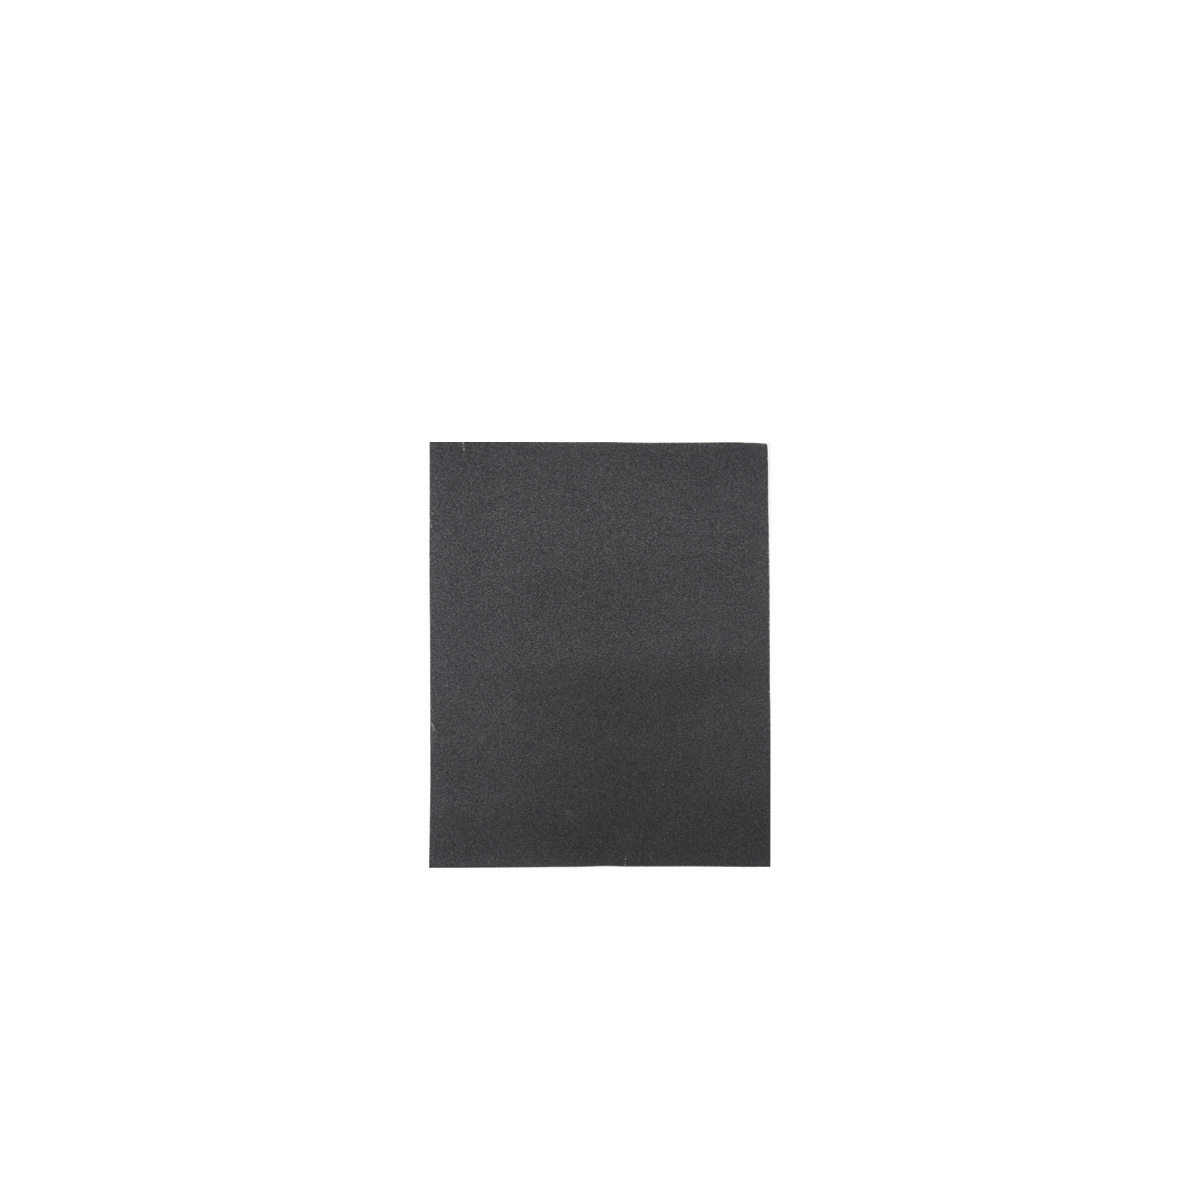 Лист шлифовальный Кедр, P 800, 230 x 280 мм, водостойкий,  бумага, 10 шт